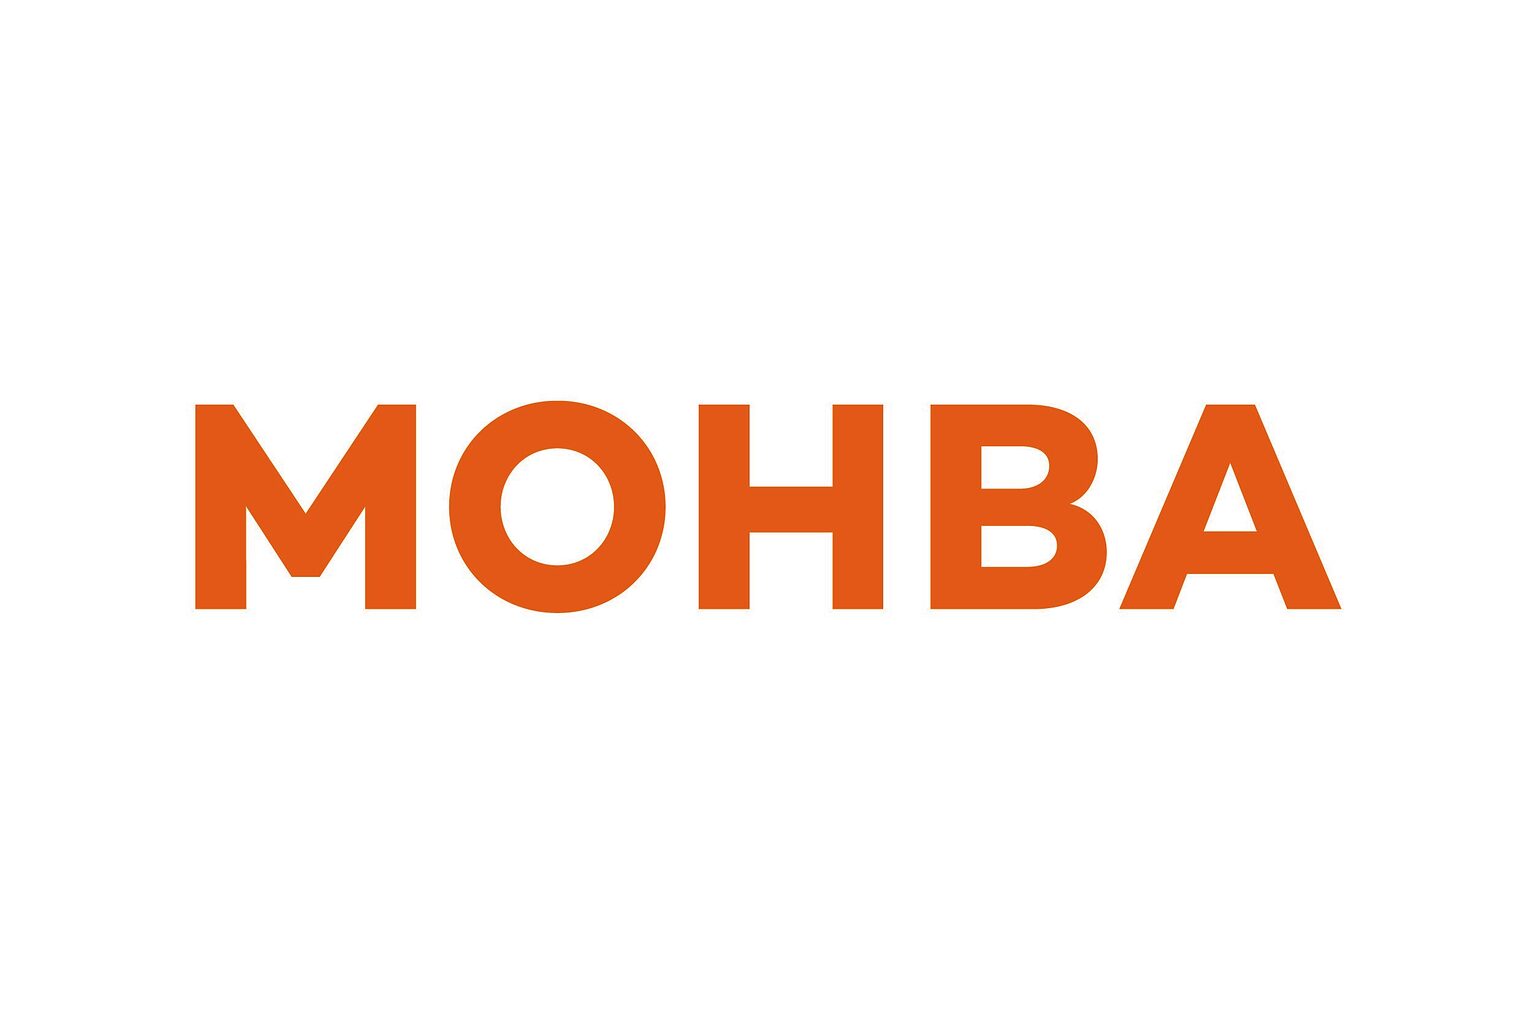 Mohba